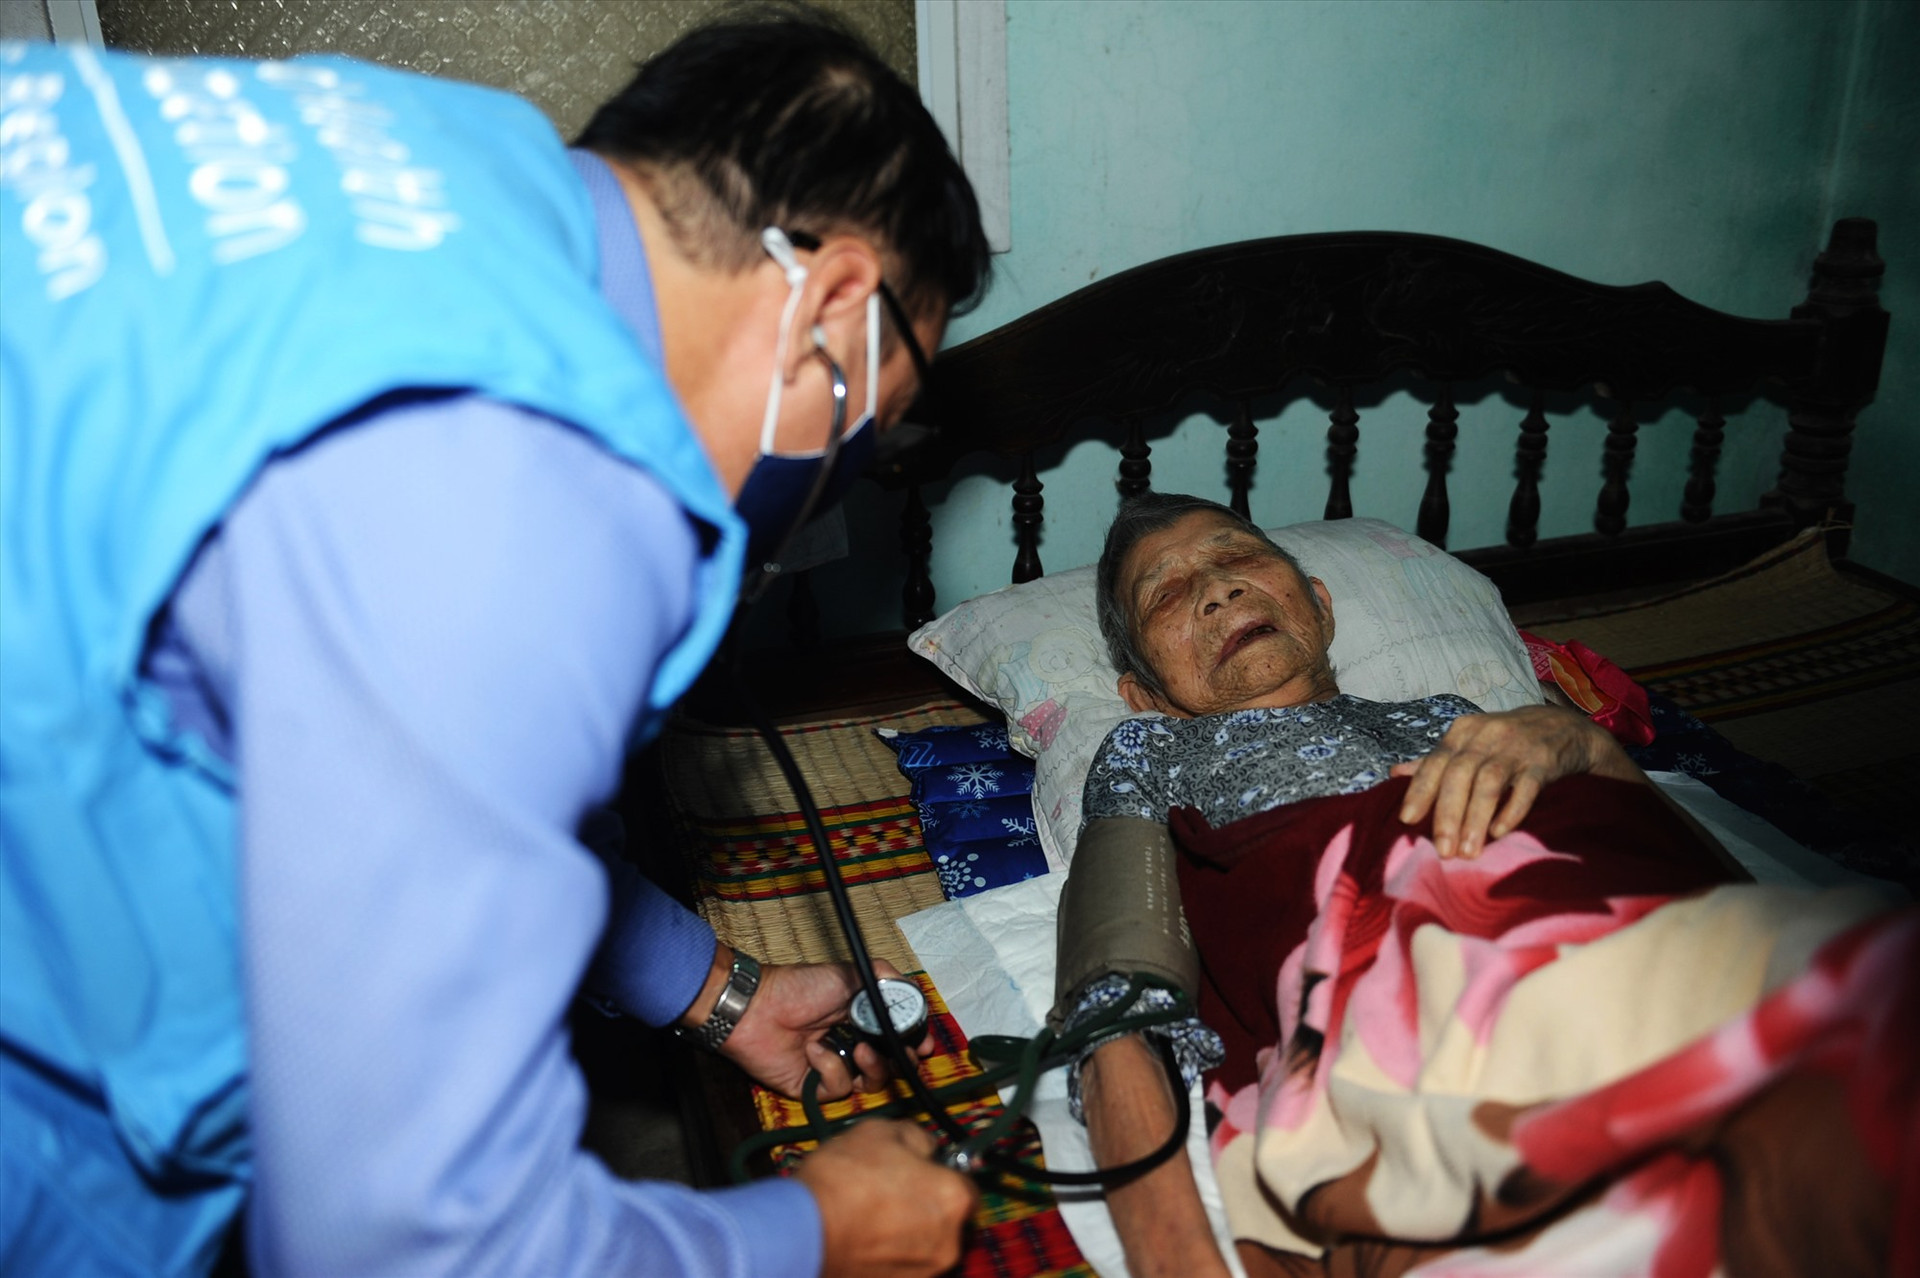 Đích thân TS-BS Vũ Minh Hương tới nhà khám bệnh để tim vắc xin ngừa Covid cho mẹ VNAH Trần Thị Thùy 104 tuổi tại xã Cẩm Thanh